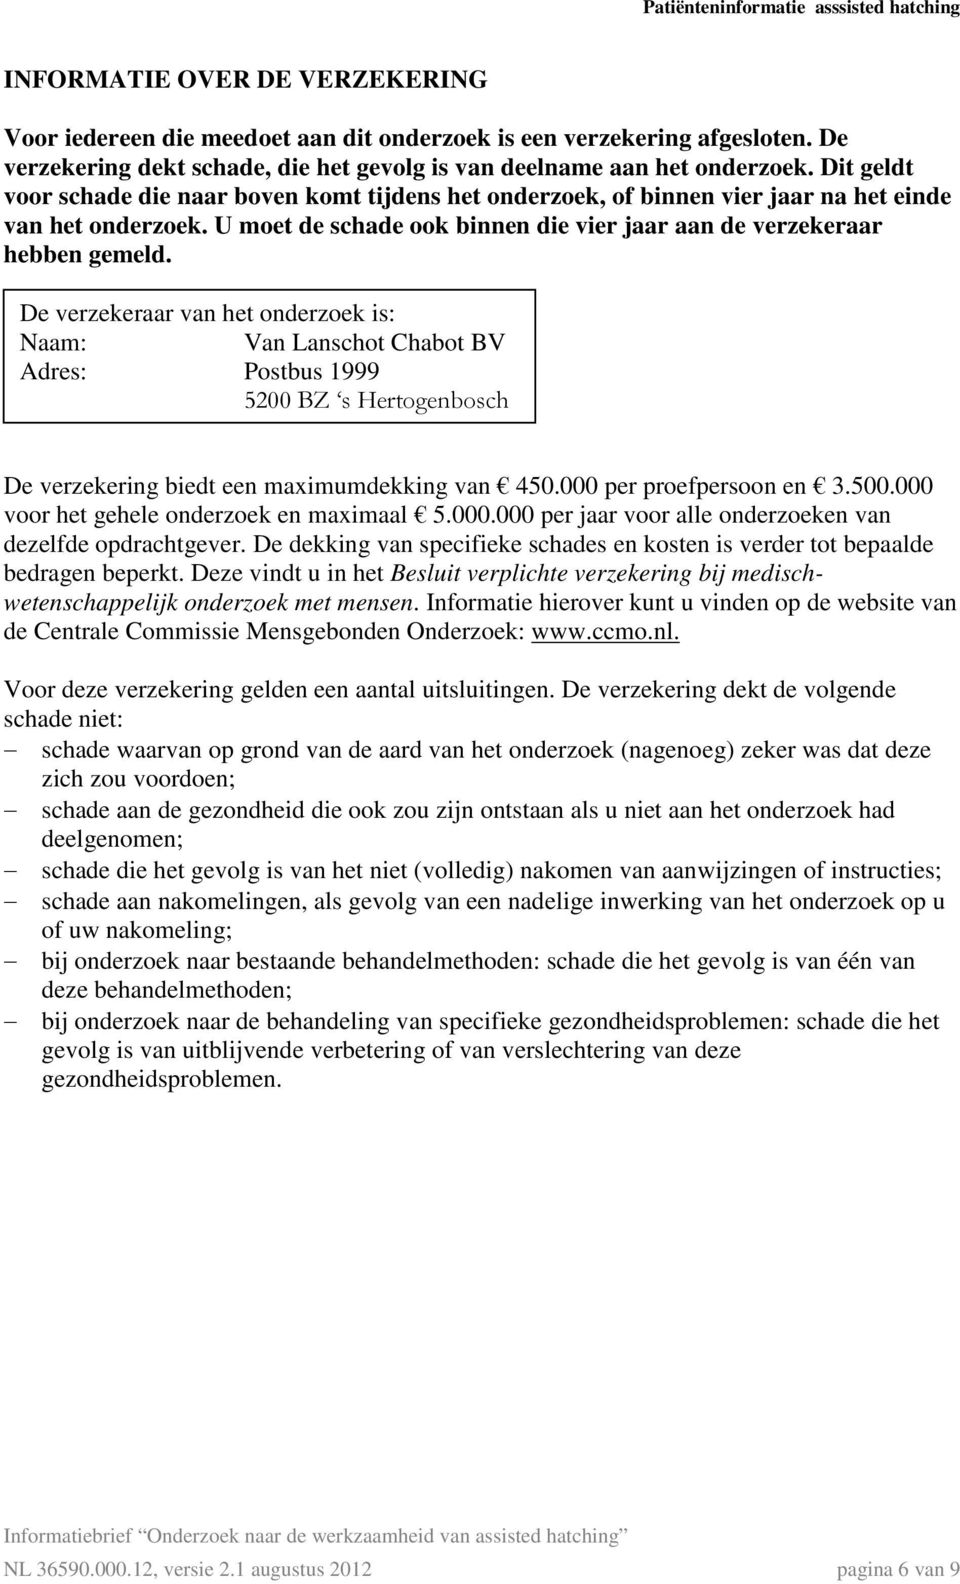 De verzekeraar van het onderzoek is: Naam: Van Lanschot Chabot BV Adres: Postbus 1999 5200 BZ s Hertogenbosch De verzekering biedt een maximumdekking van 450.000 per proefpersoon en 3.500.